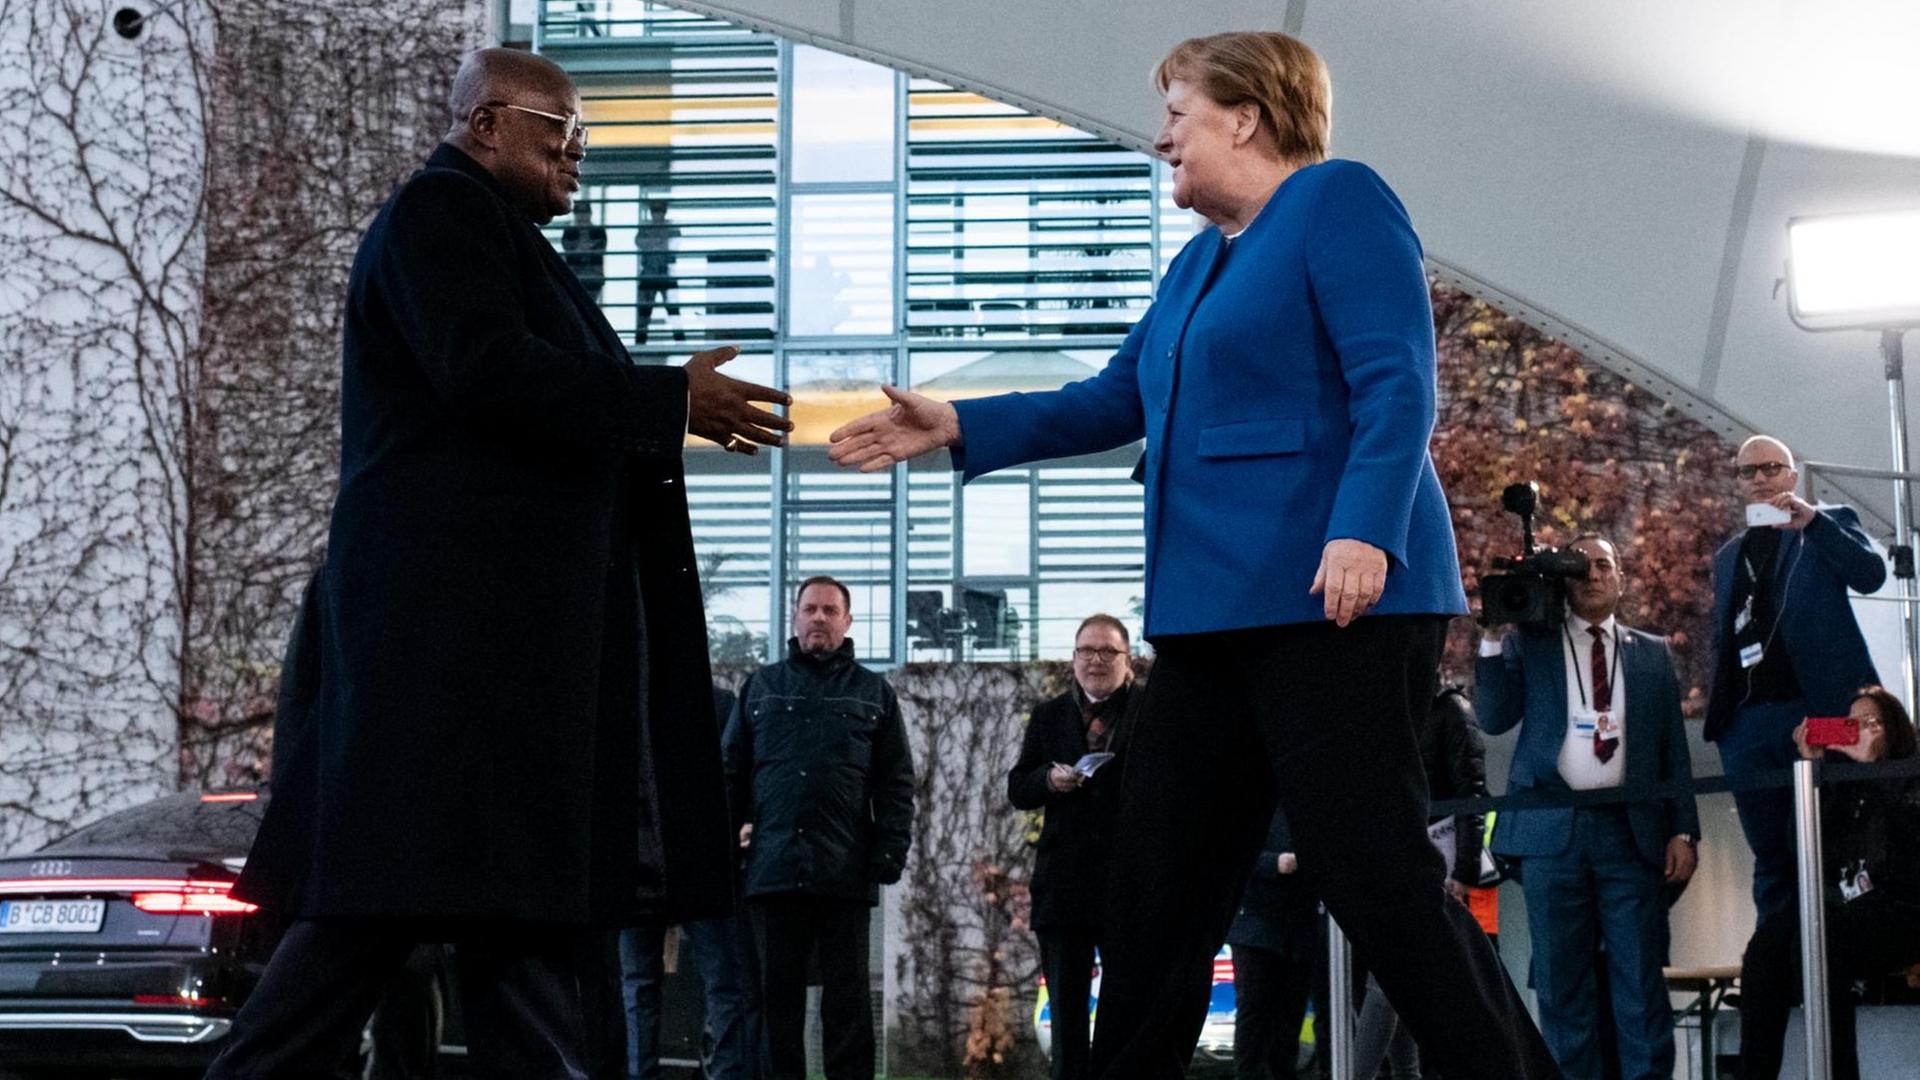 Bundes-Kanzlerin Angela Merkel begrüßt den Präsidenten von dem Land Ghana. Er heißt Nana Addo Dankwa Akufo-Add.